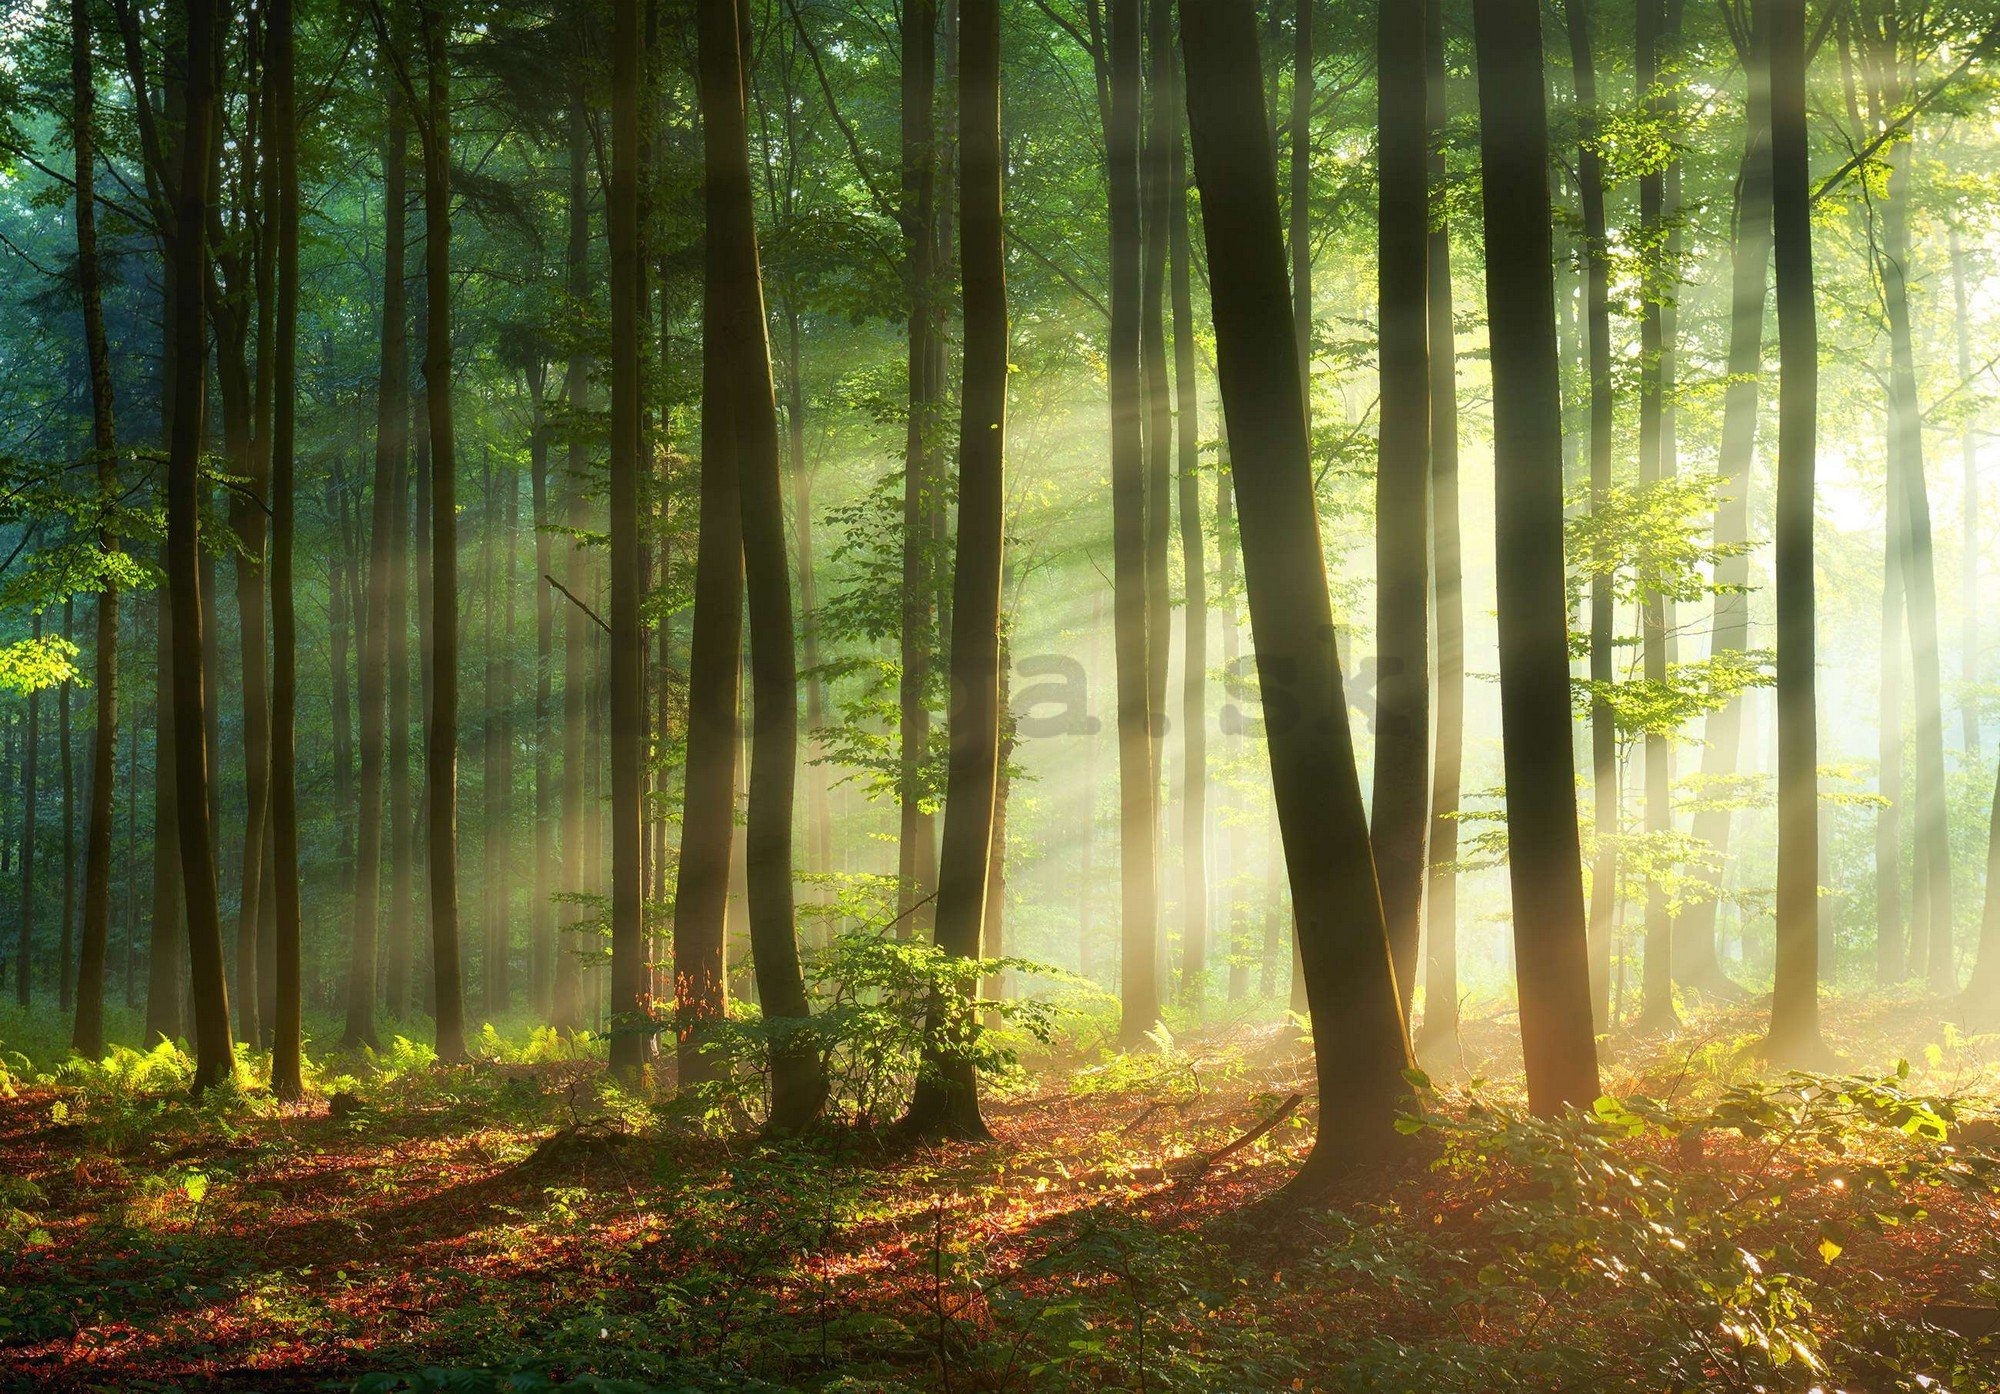 Fototapeta vliesová: Východ slunce v lese - 254x184 cm